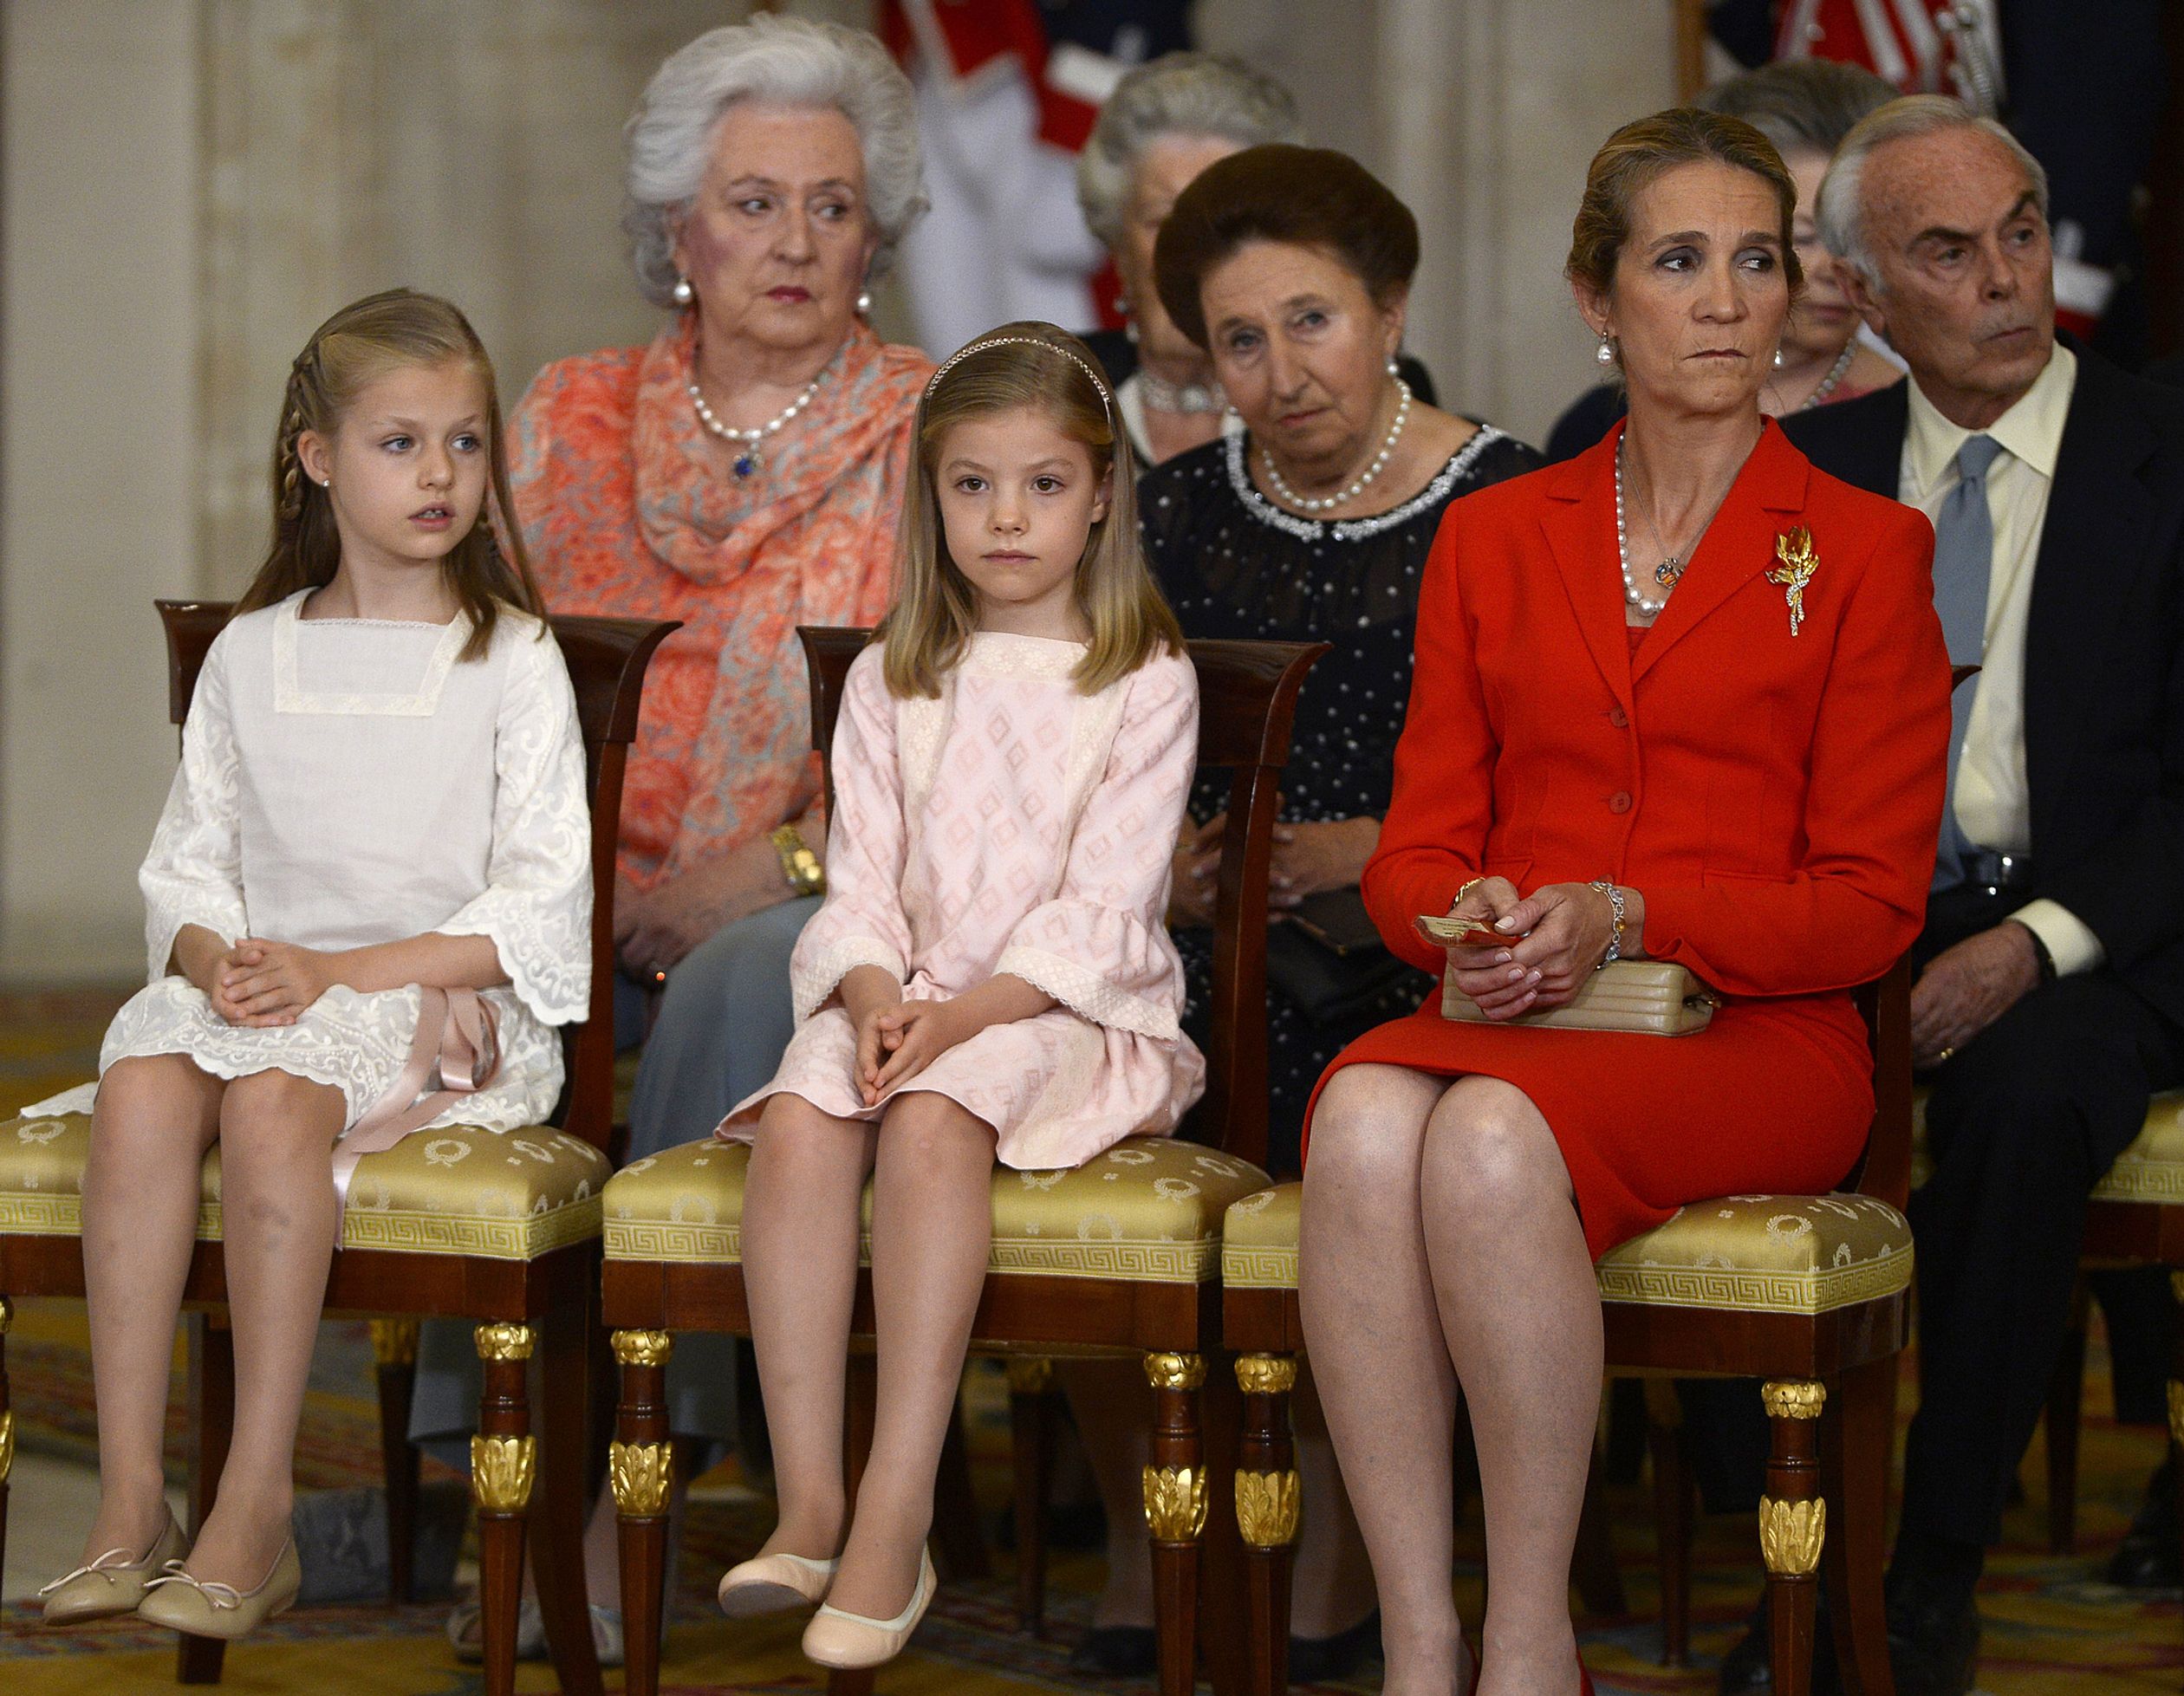 Elena samen met haar nichtjes Leonor en Sofía tijdens de abdicatie van koning Juan Carlos, 18 juni